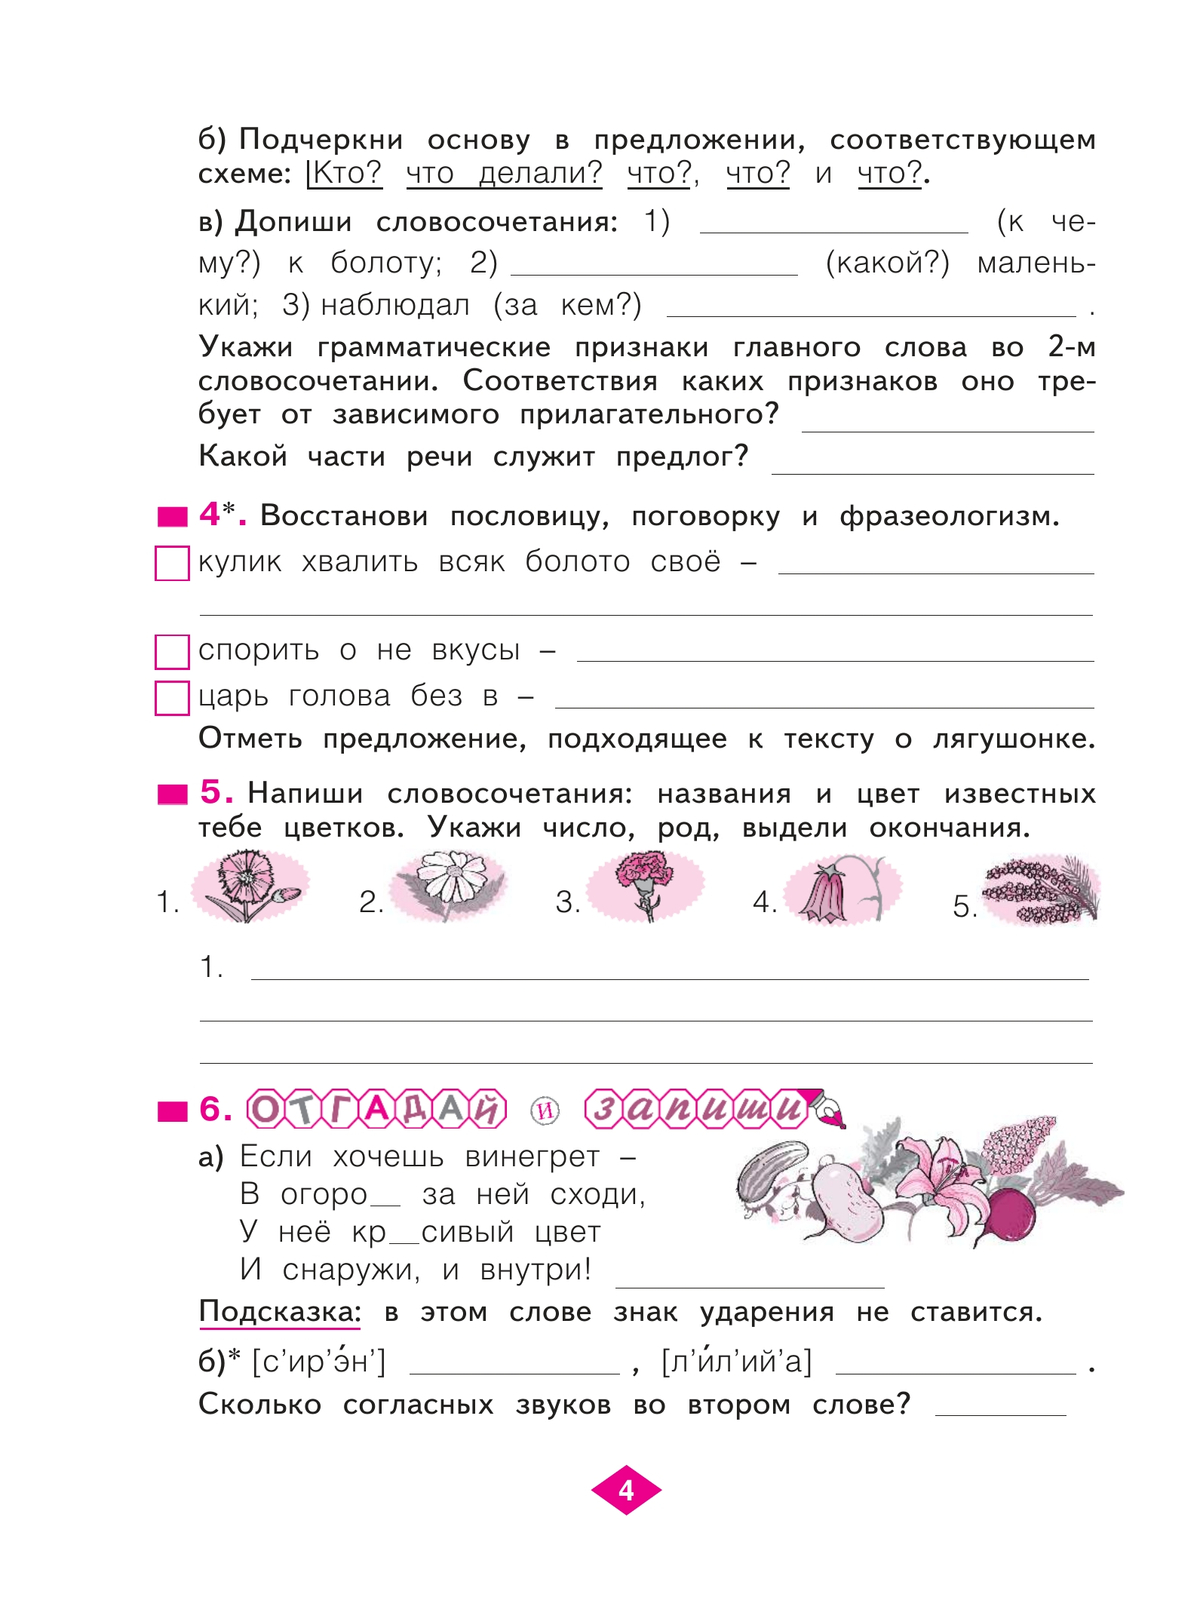 Русский язык. Рабочая тетрадь. 3 класс. В 4-х частях. Часть 3 3